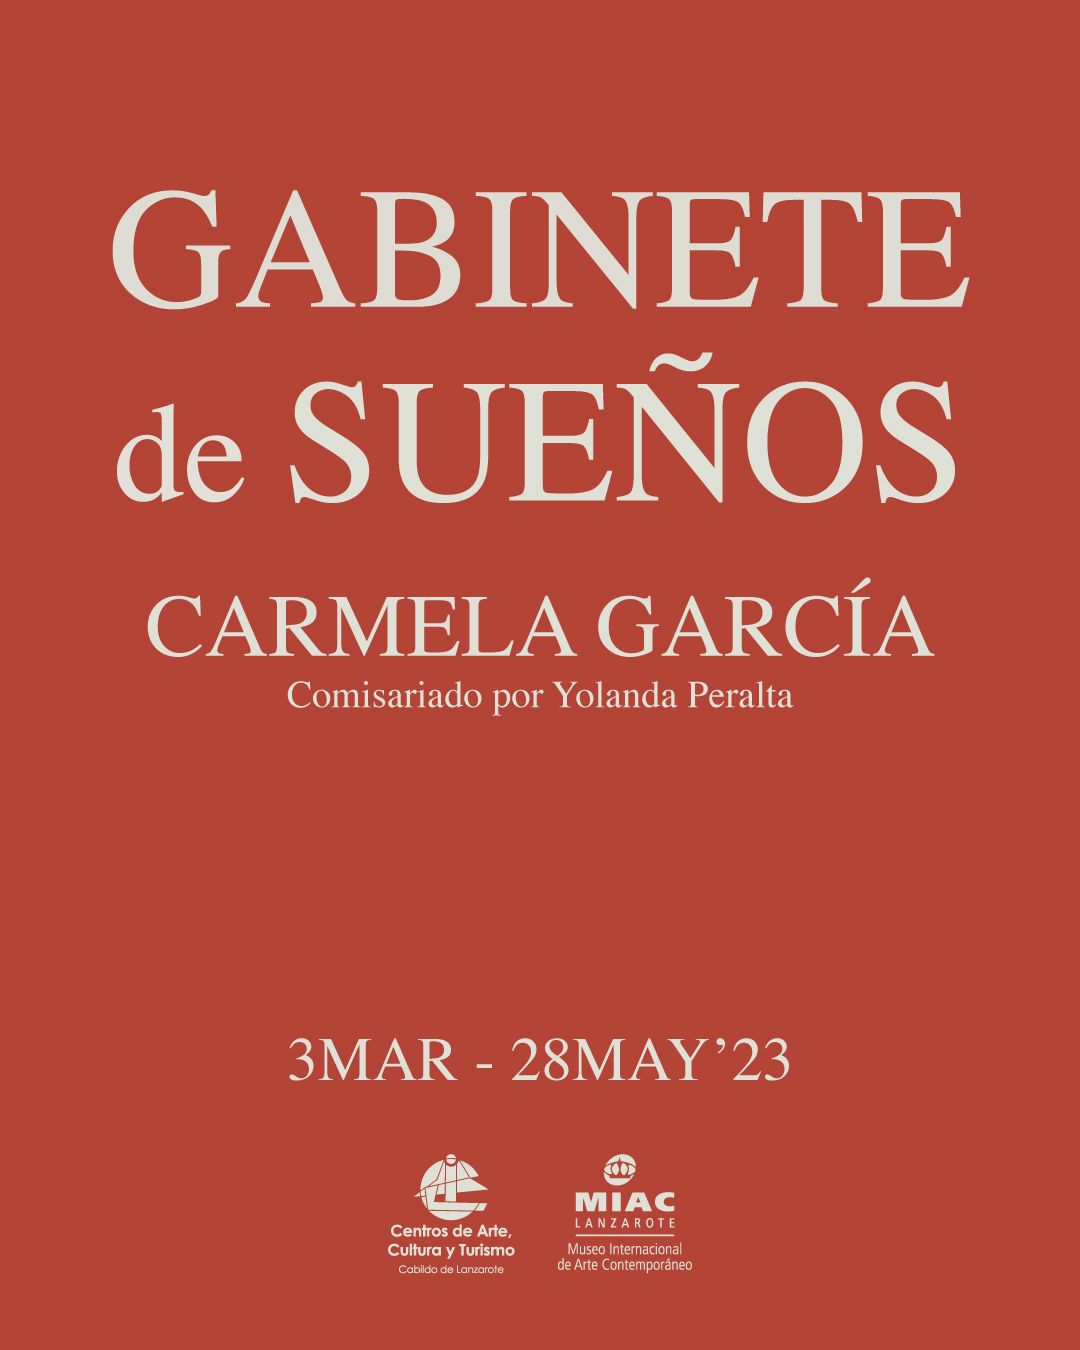 Exposición "Gabinete de sueños" de Carmela García